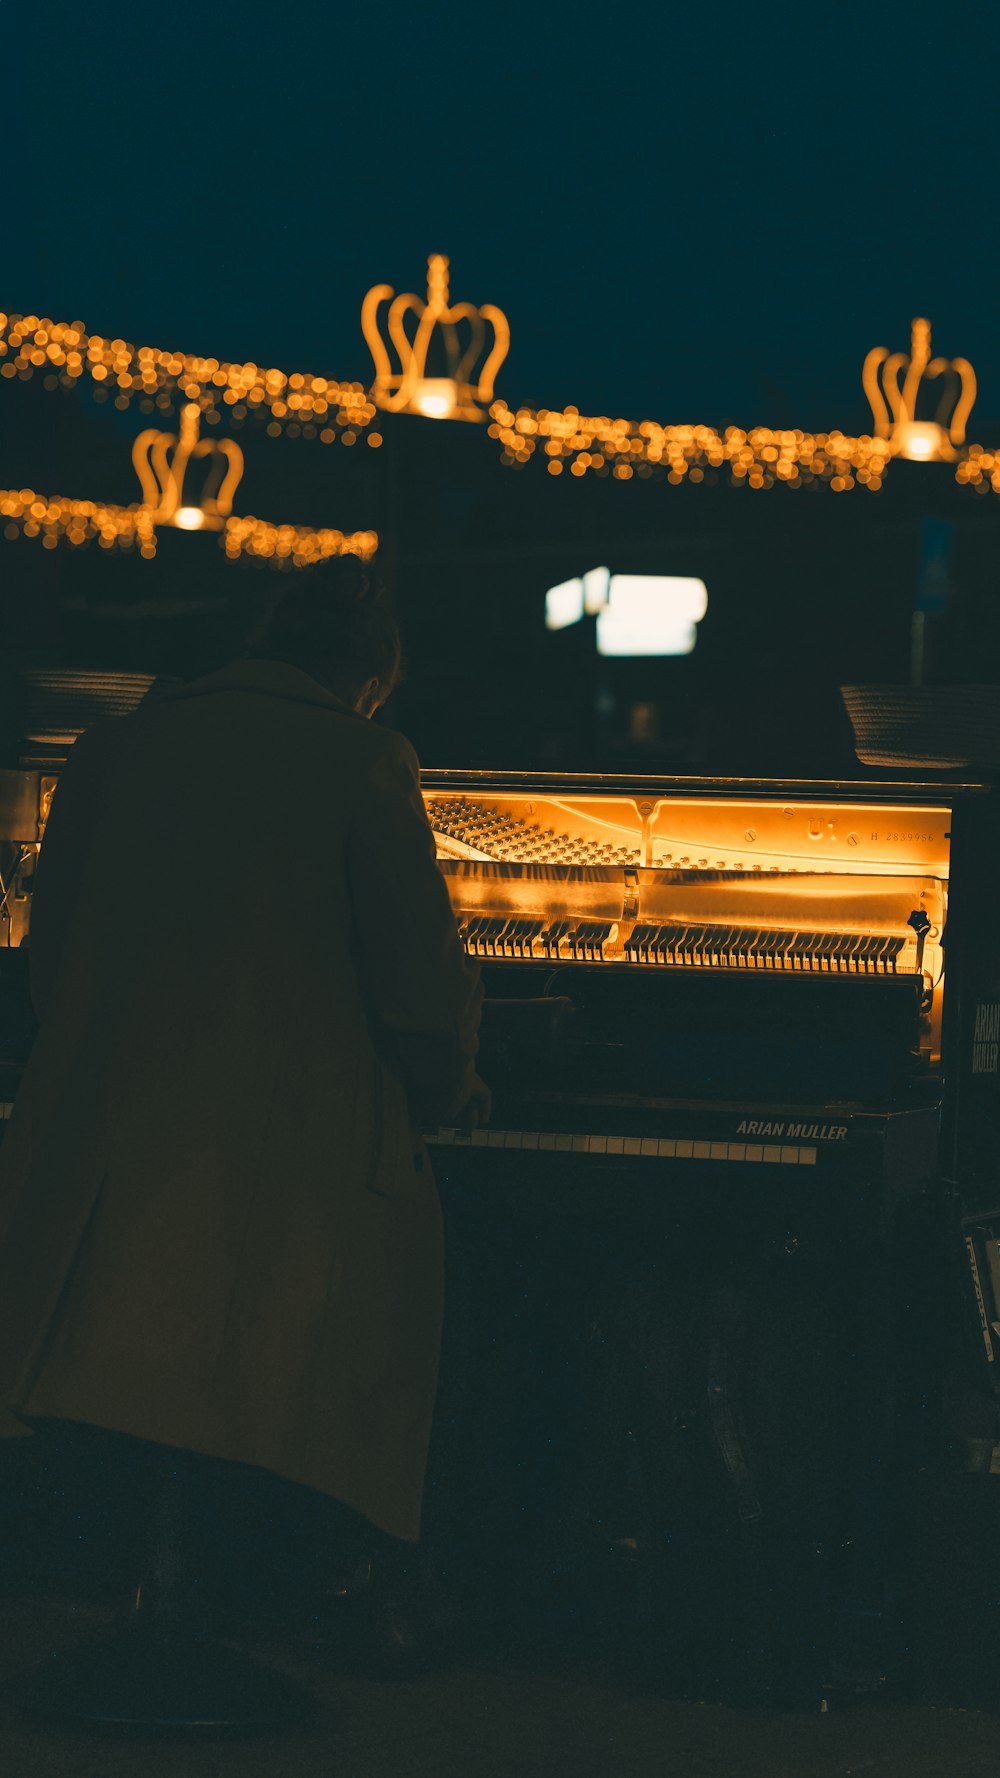 una persona sentada al piano frente a unas luces